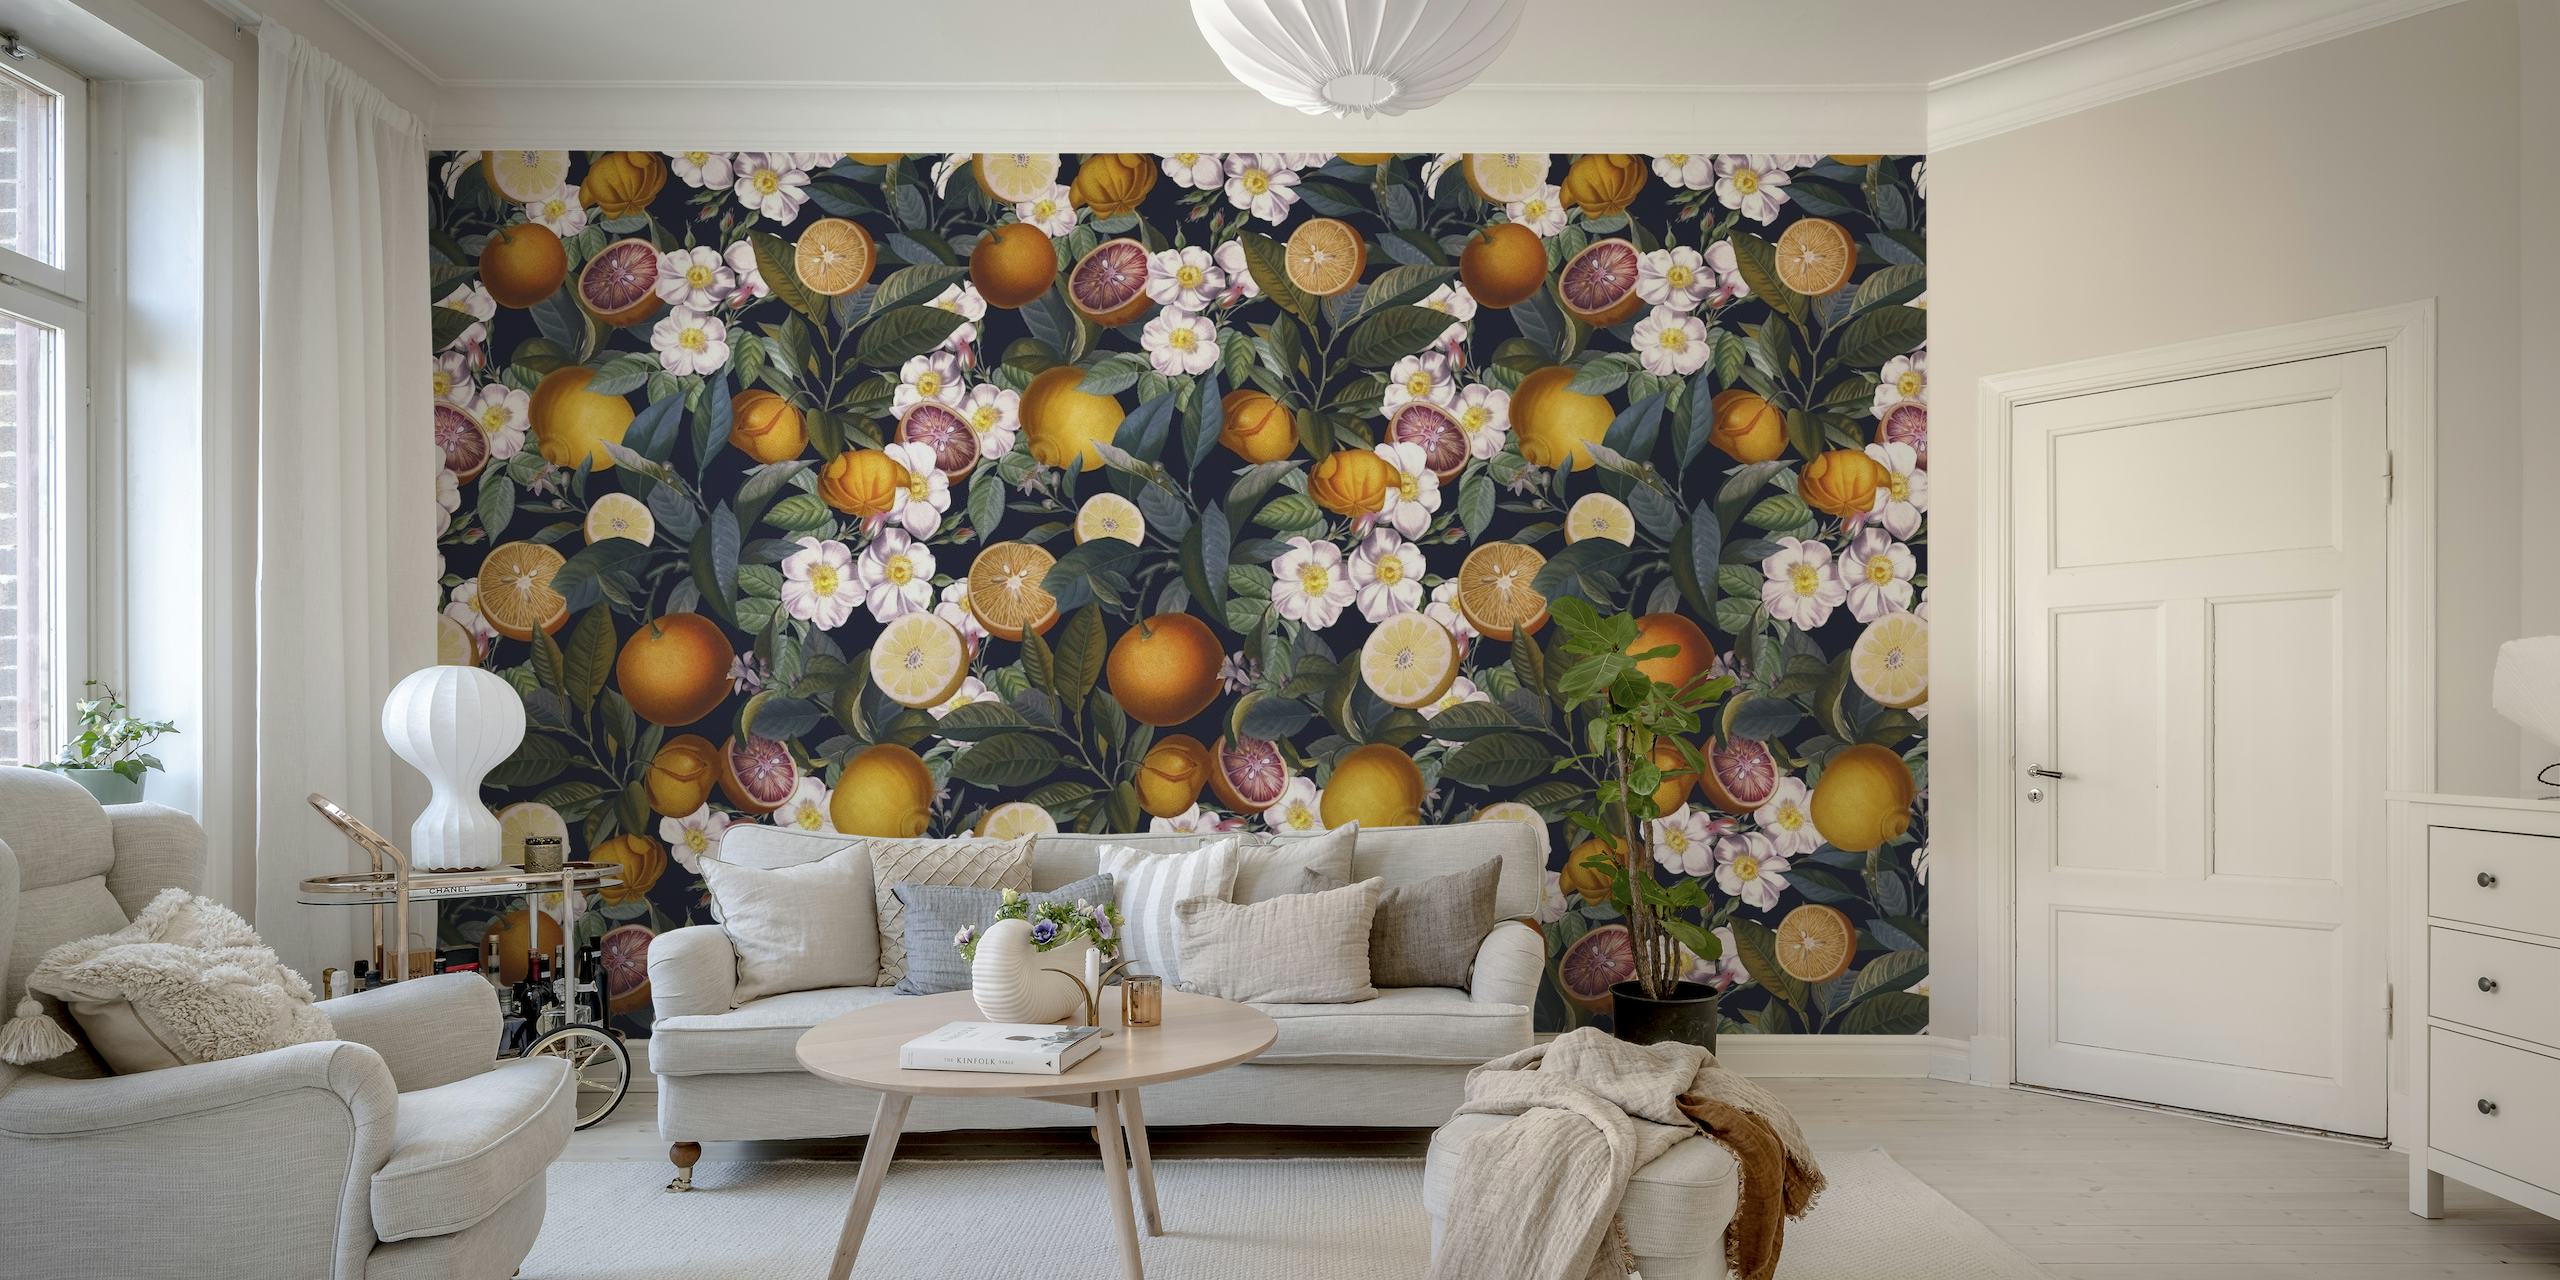 Ein Wandgemälde mit dem Namen „Juicy Lemons – Night“ zeigt ein Muster aus reifen Zitronen und Blumen auf einem dunklen Hintergrund